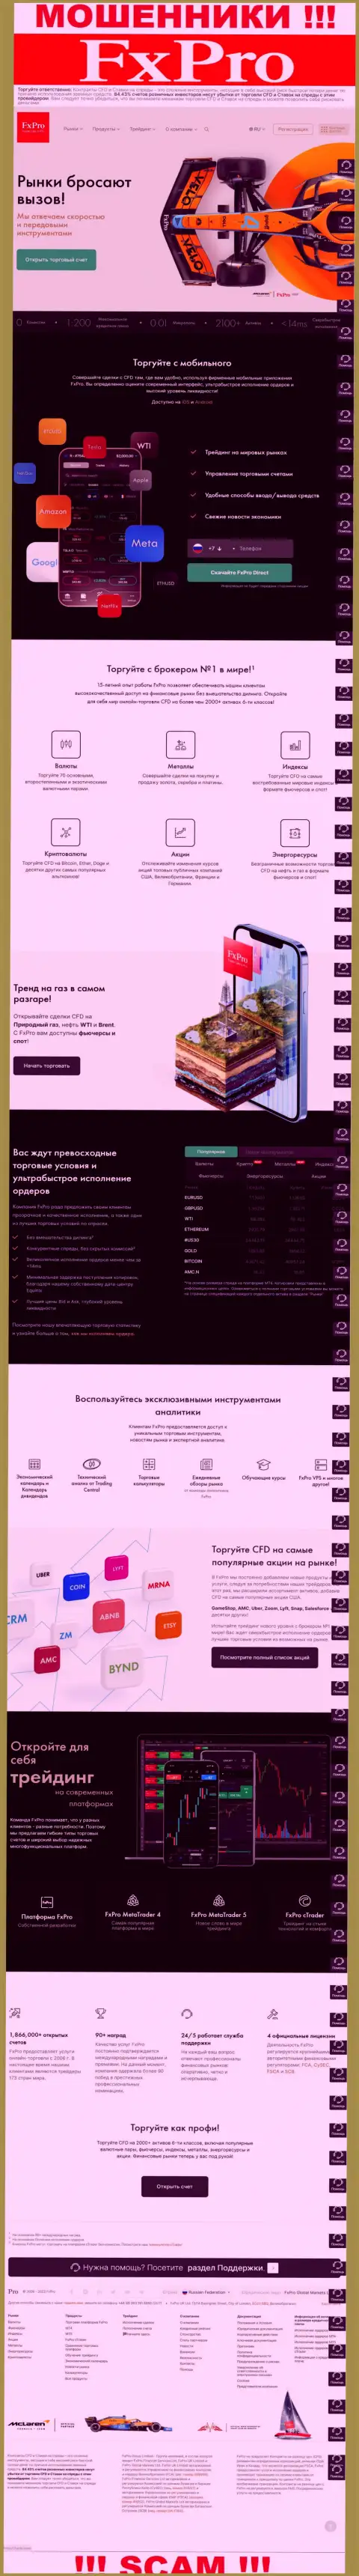 Замануха для лохов - официальный информационный портал мошенников FxPro Com